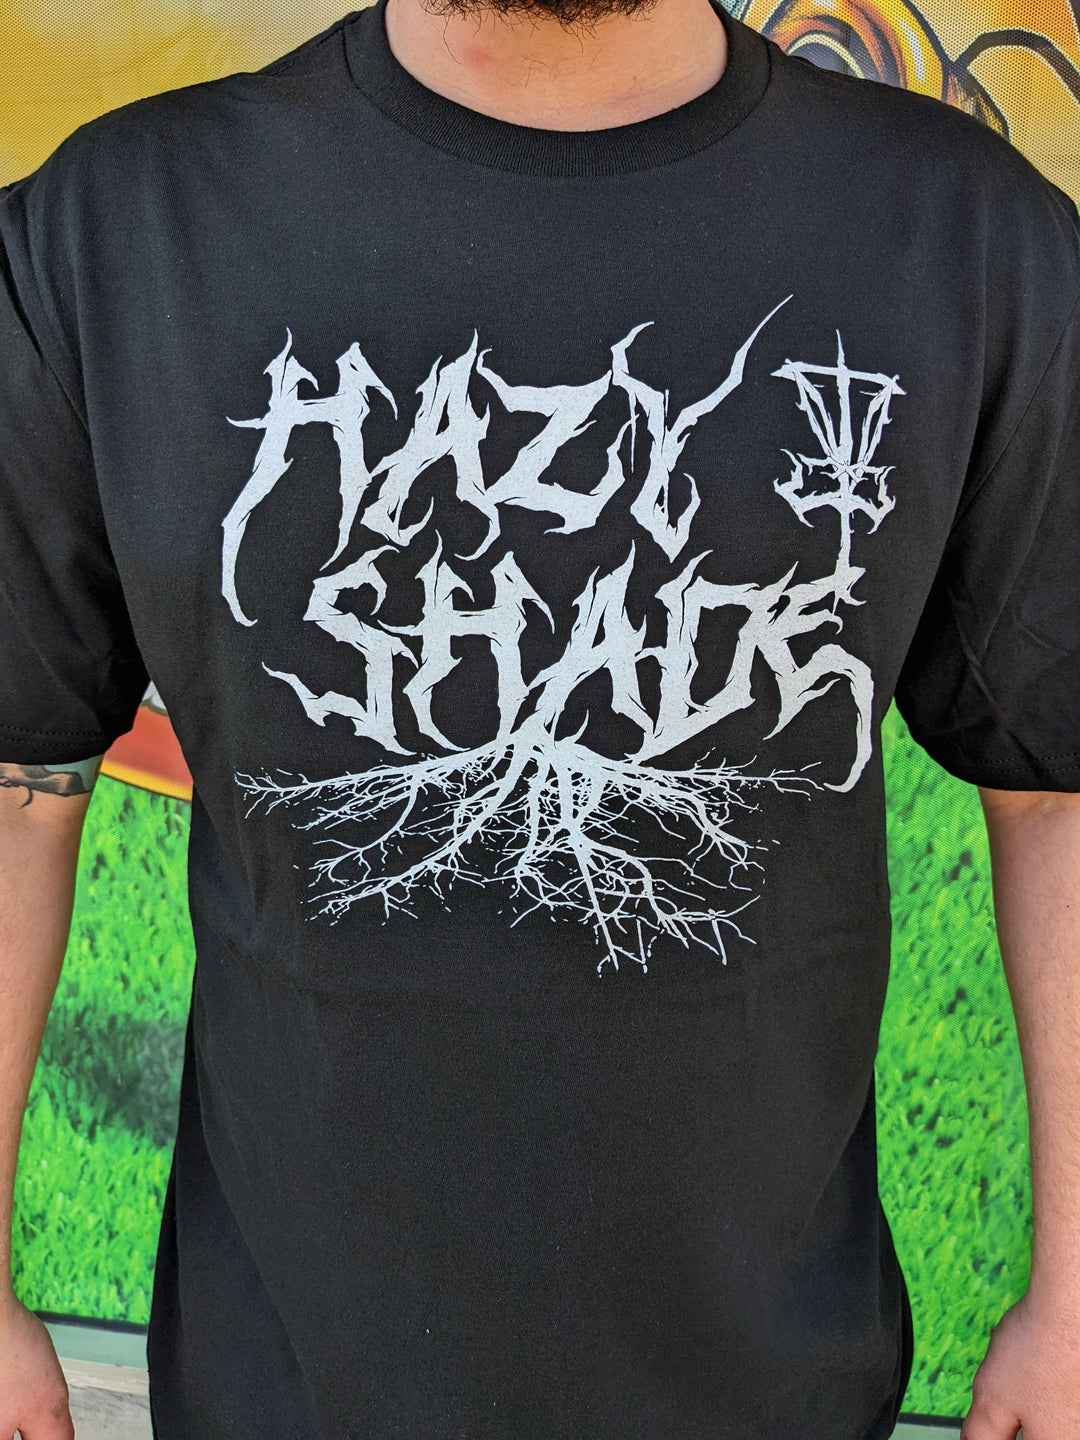 Hazy Shade Metal Tee Shirt XL